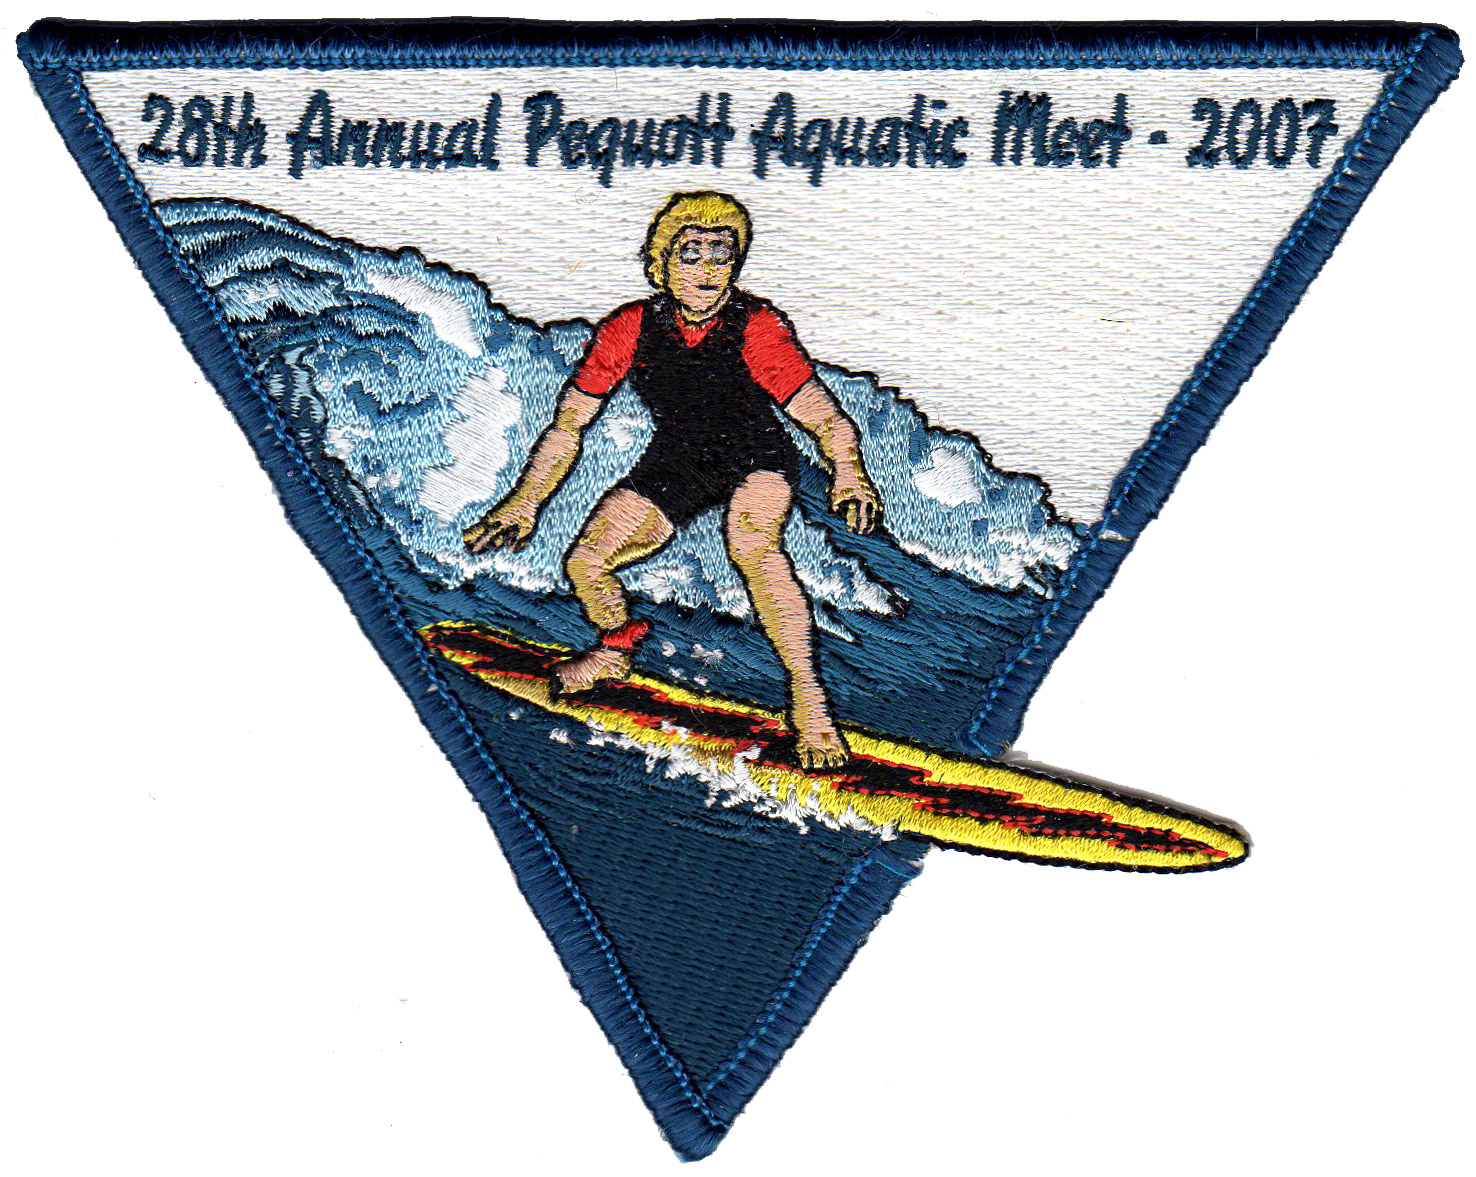 Pequott Aquatic Meet 2007